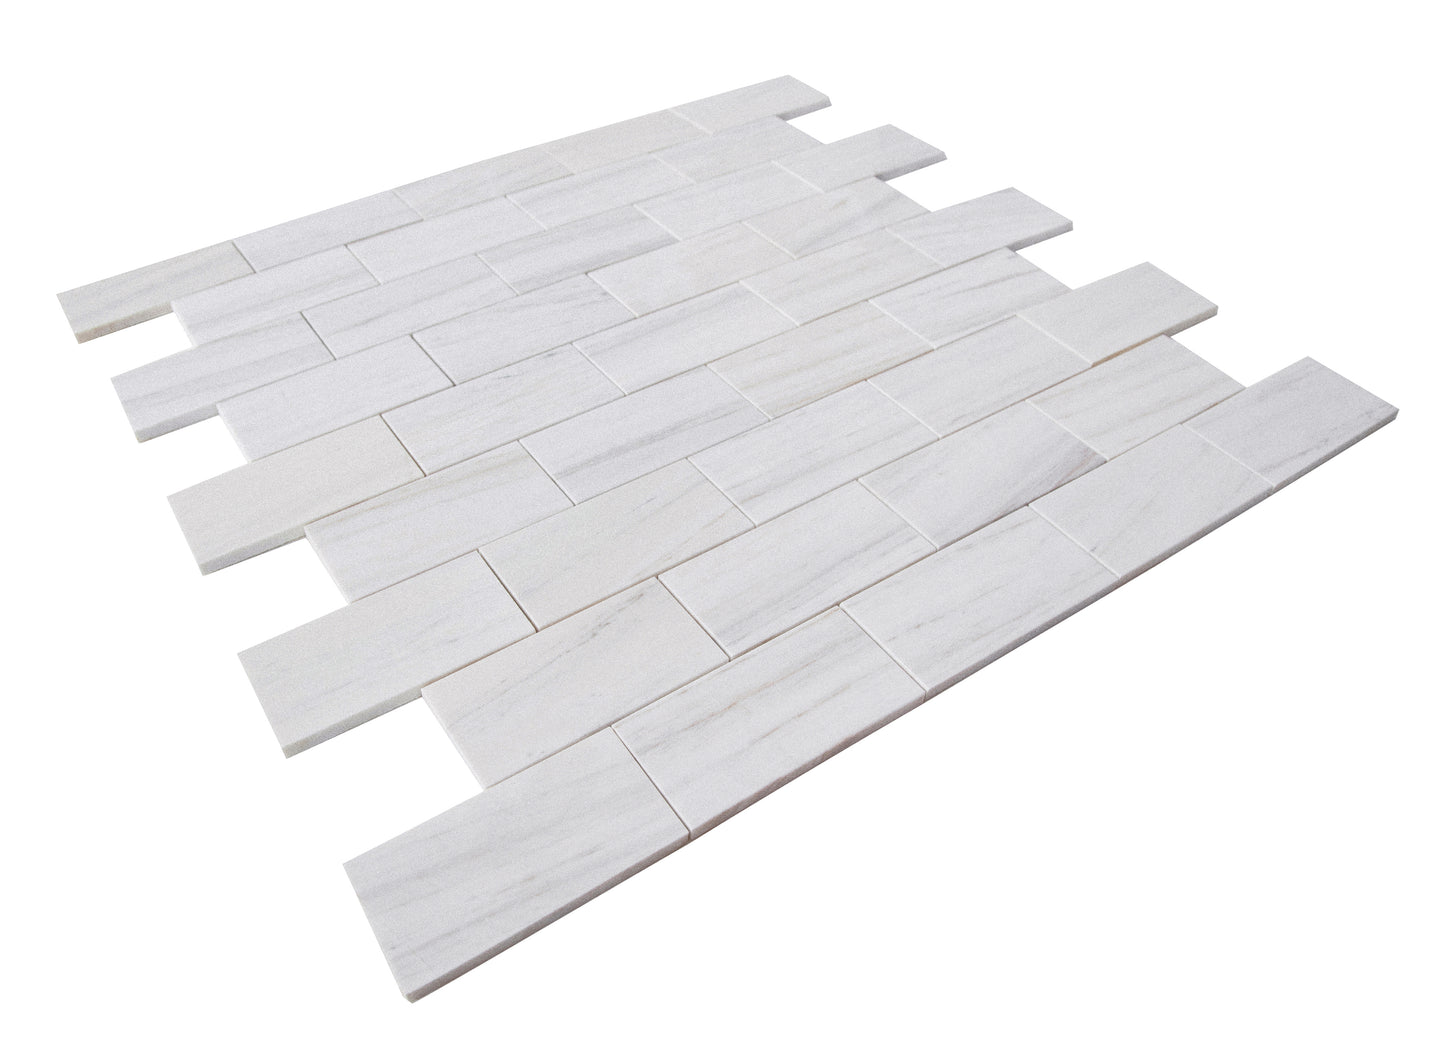 Wooden Vein Marble Tile Polished 6" x 12" 3/8" Tile